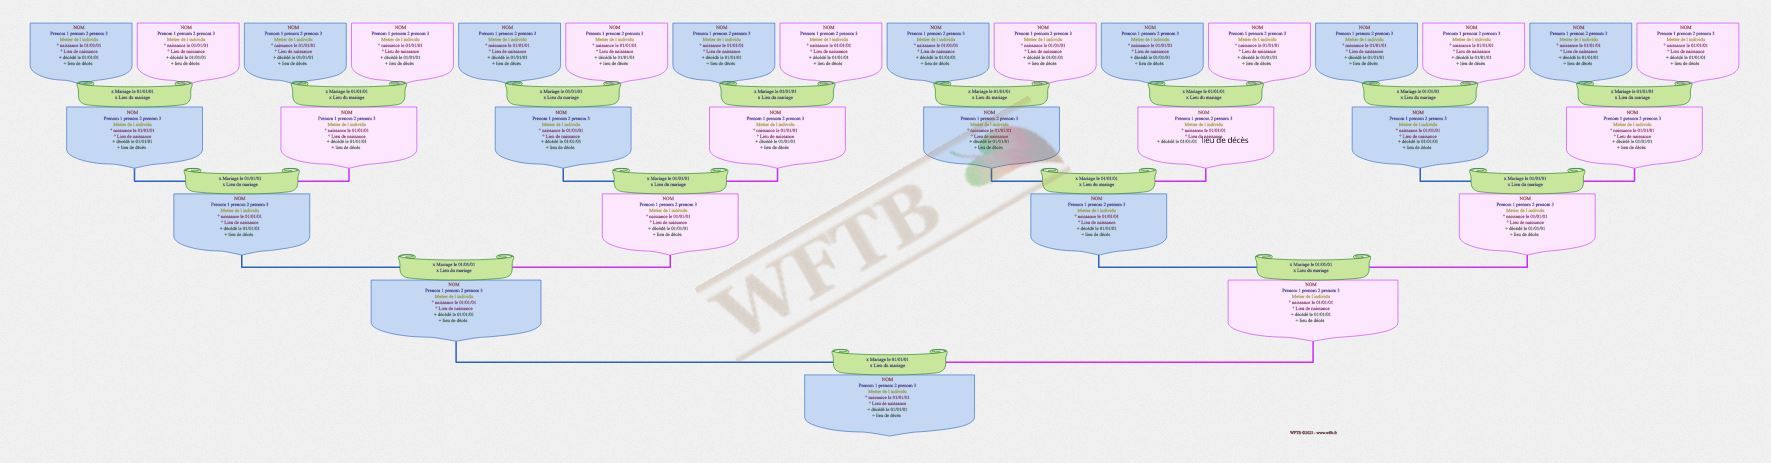 arbre-genealogique-classique-5-generations-blocs